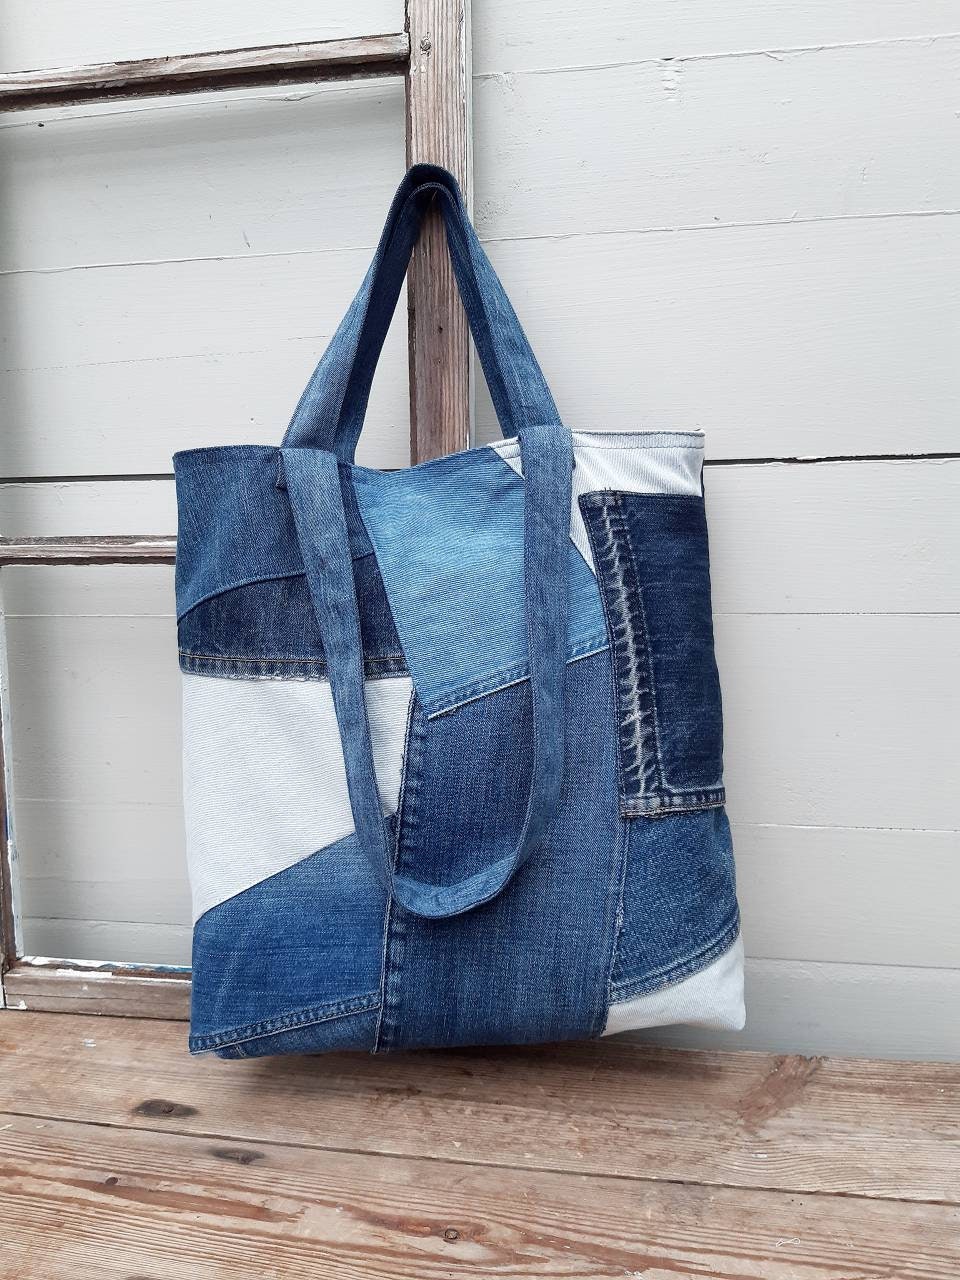 Patchwork Denim Bag Upcycled Denim Tote Bag Jeans Bag | Etsy